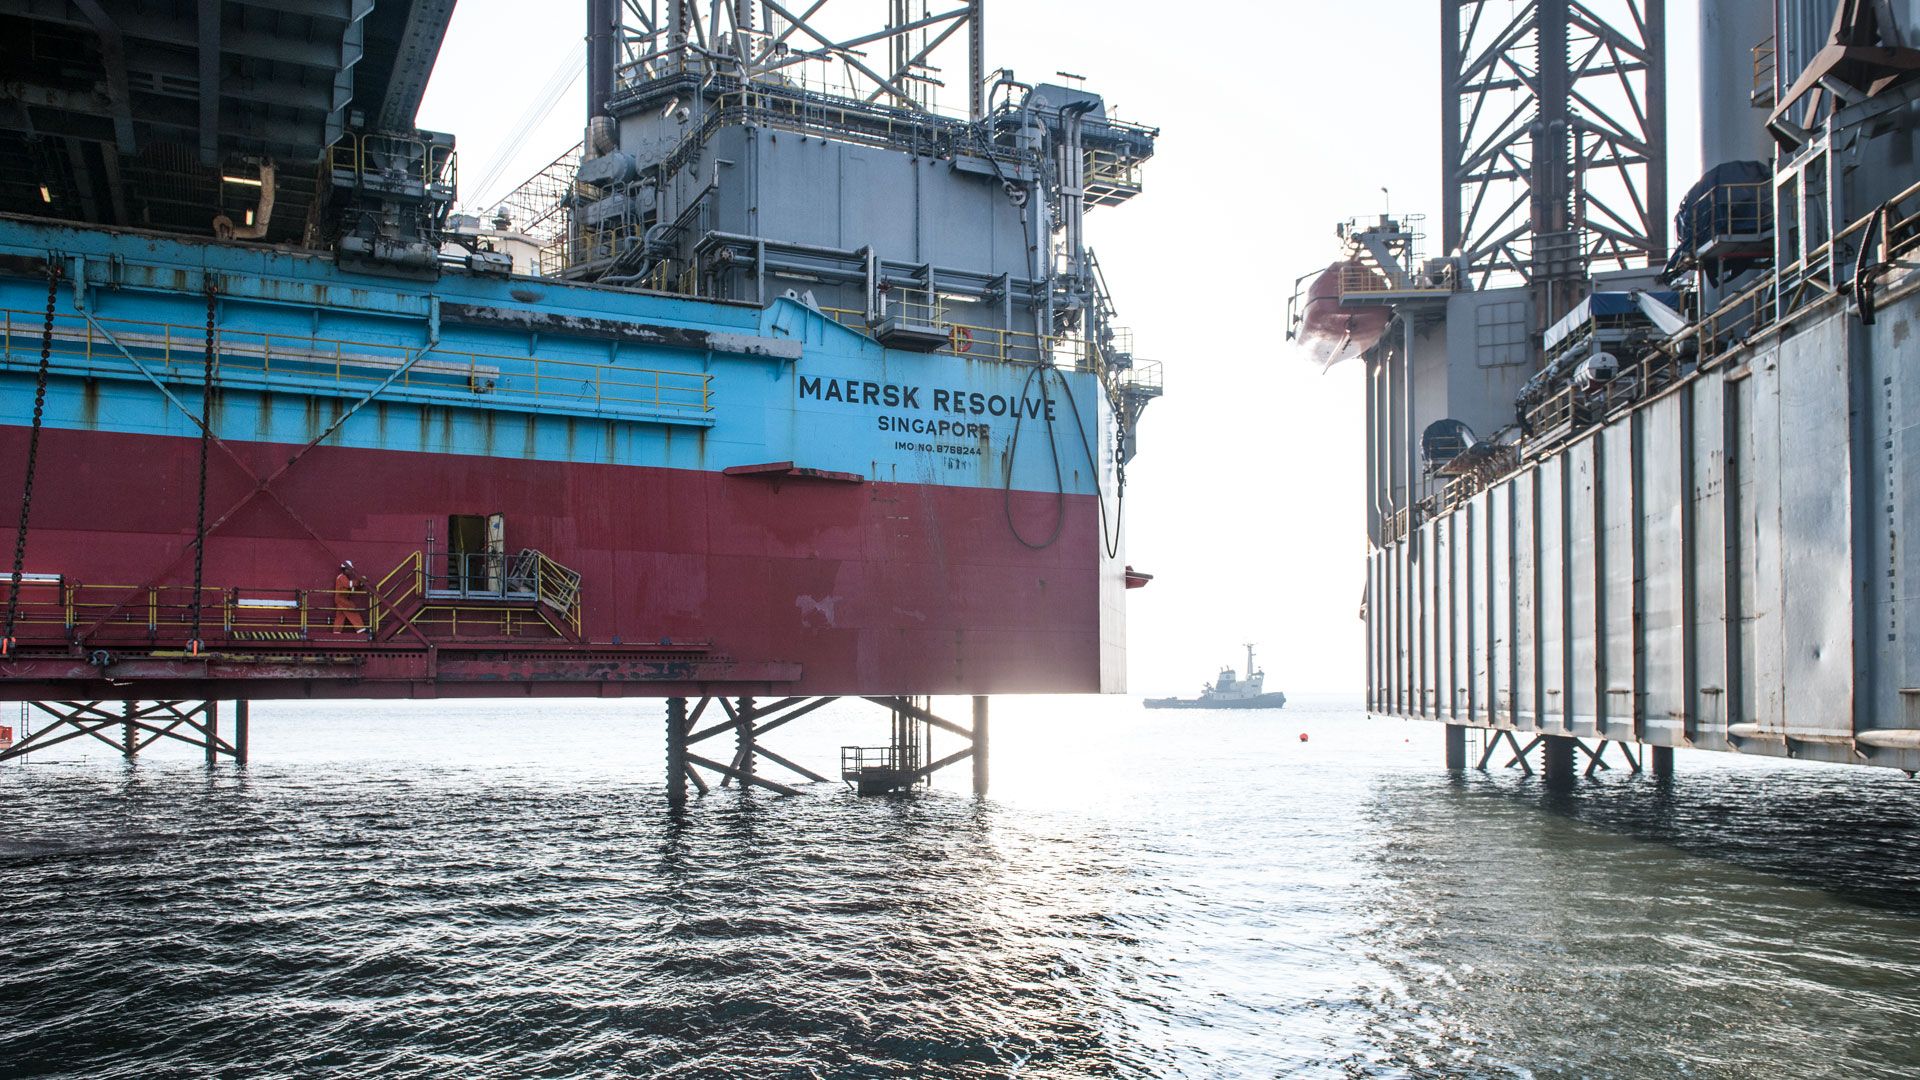 Wintershall Dea Dänemark Maersk Resolve